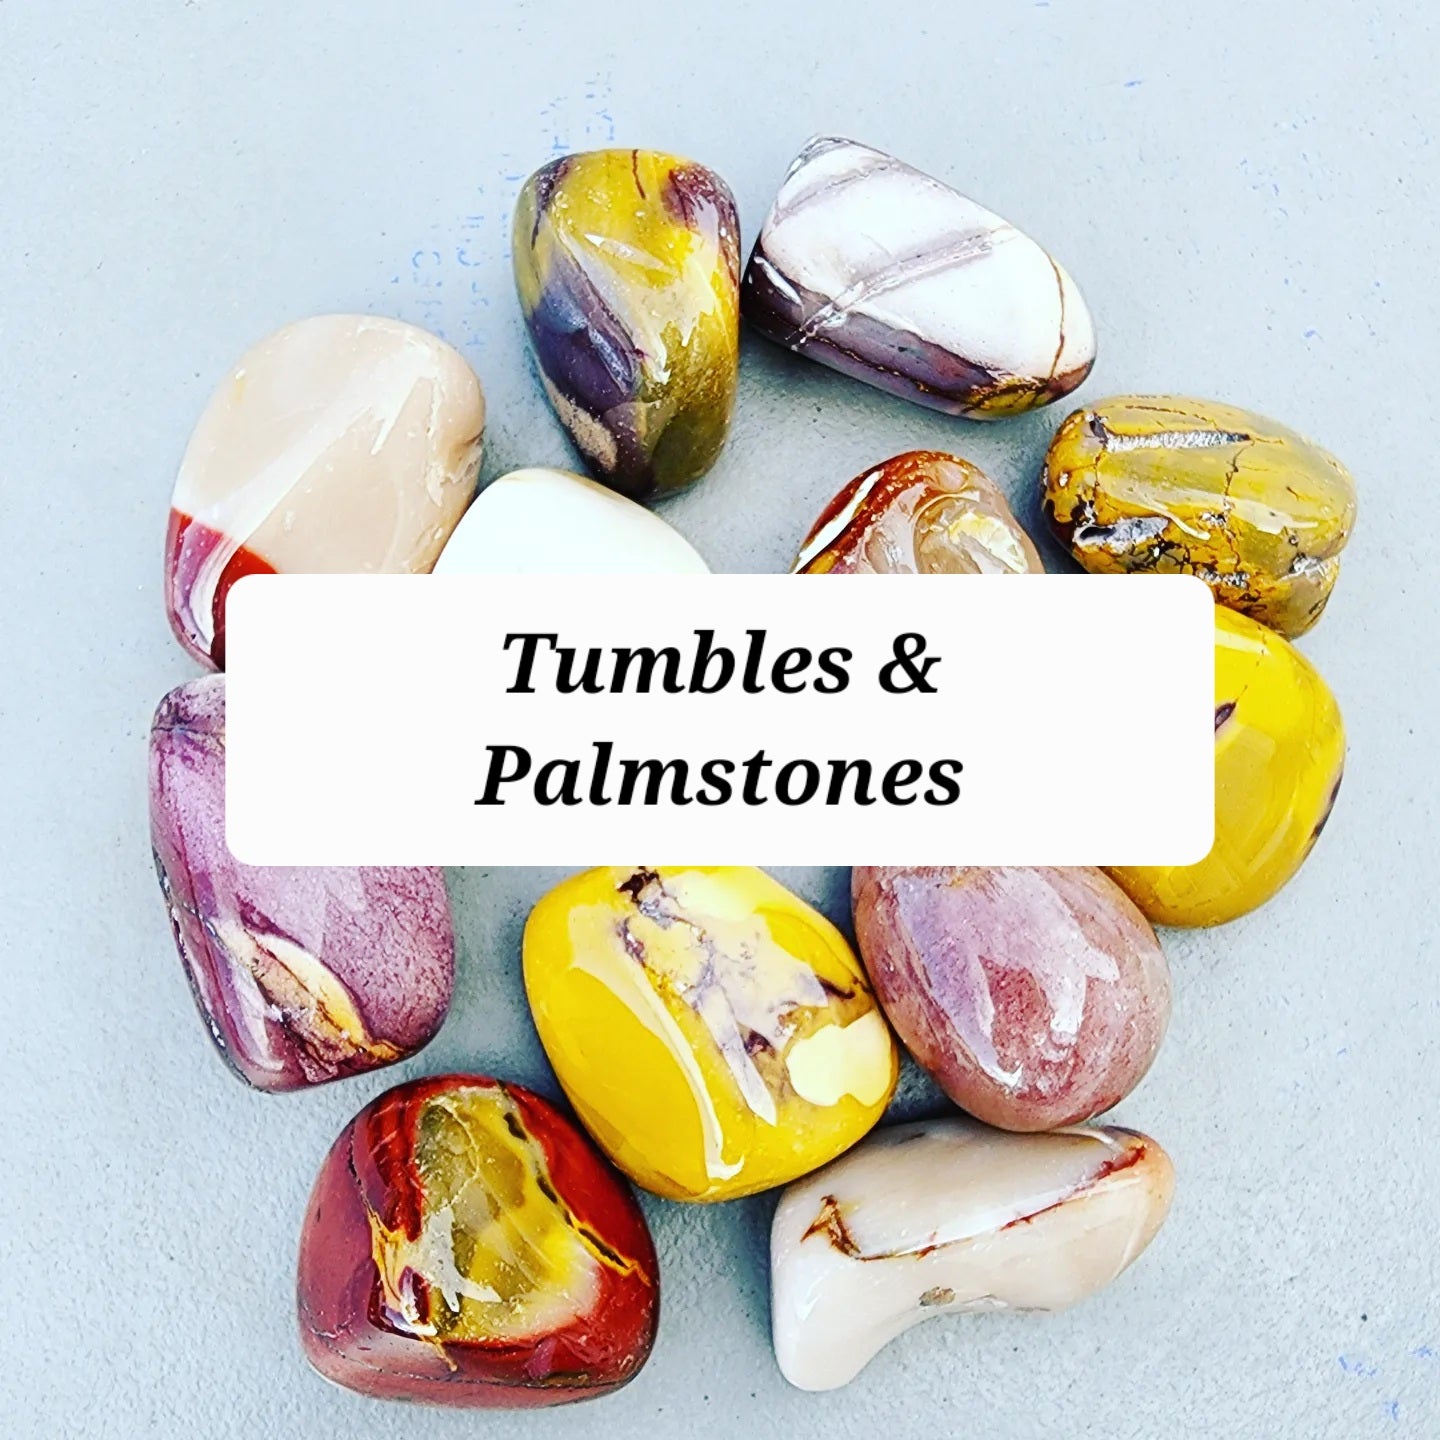 Tumbles and Palmstones